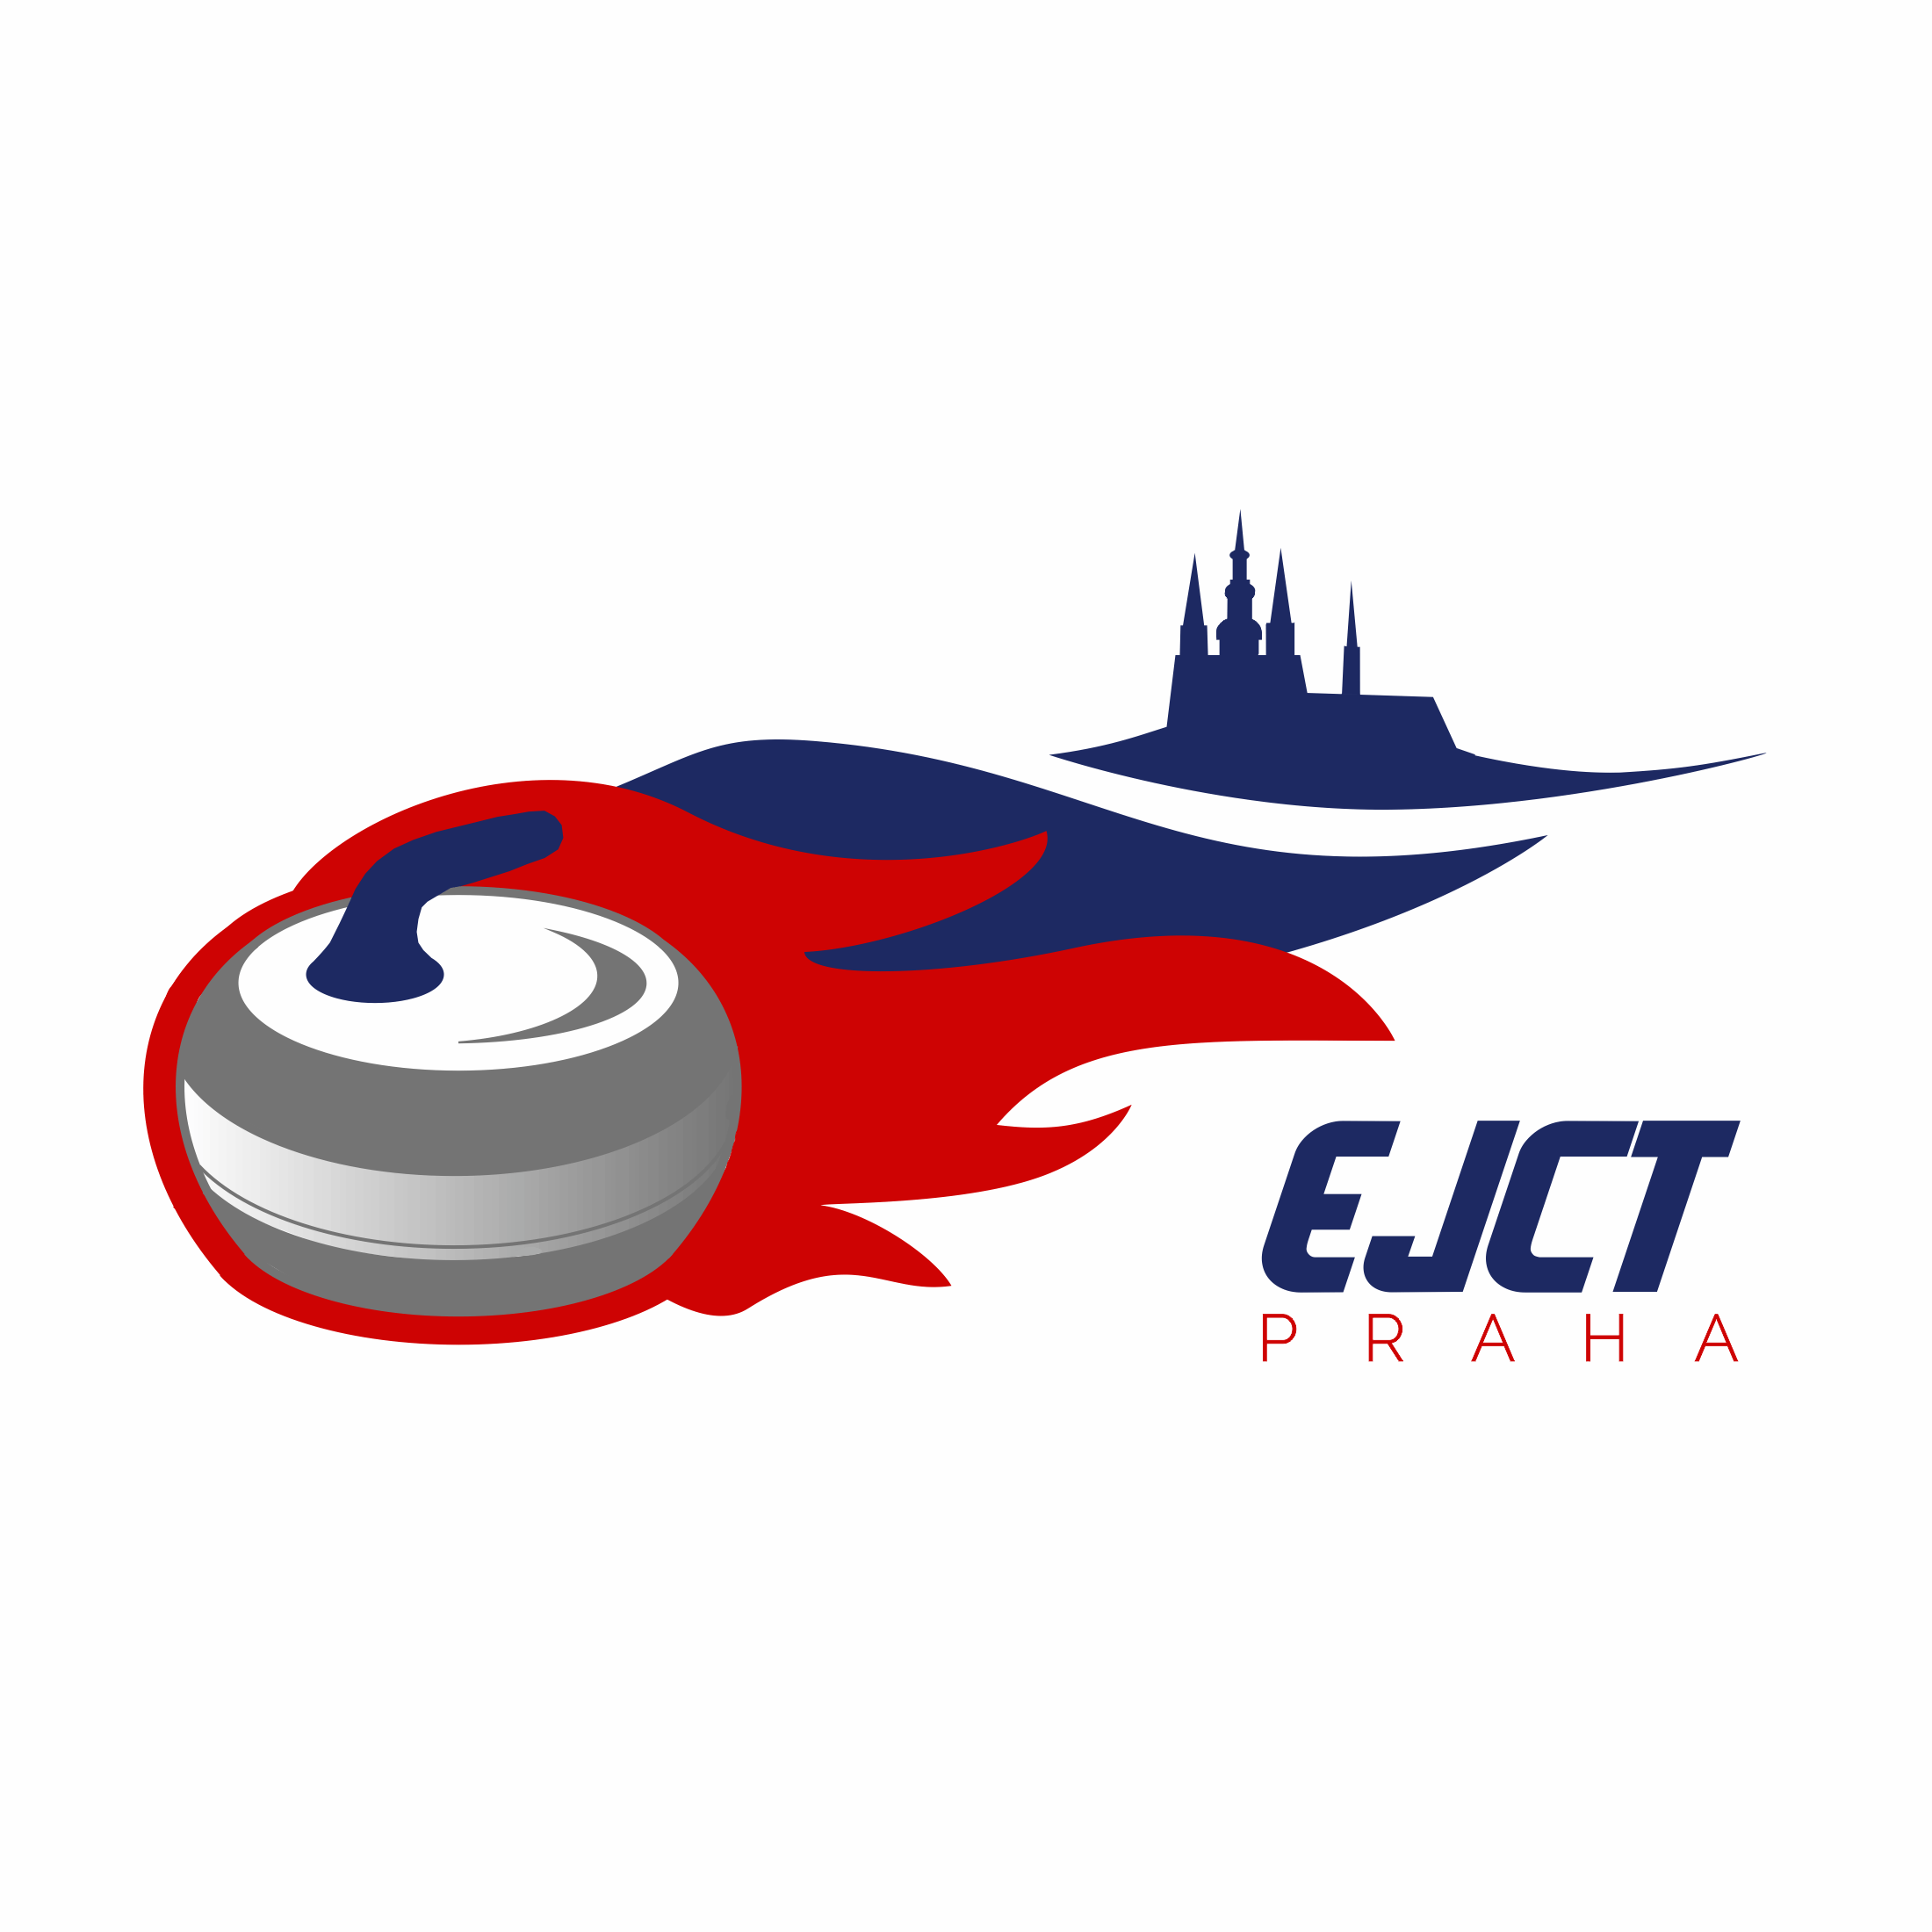 EJCT logo final